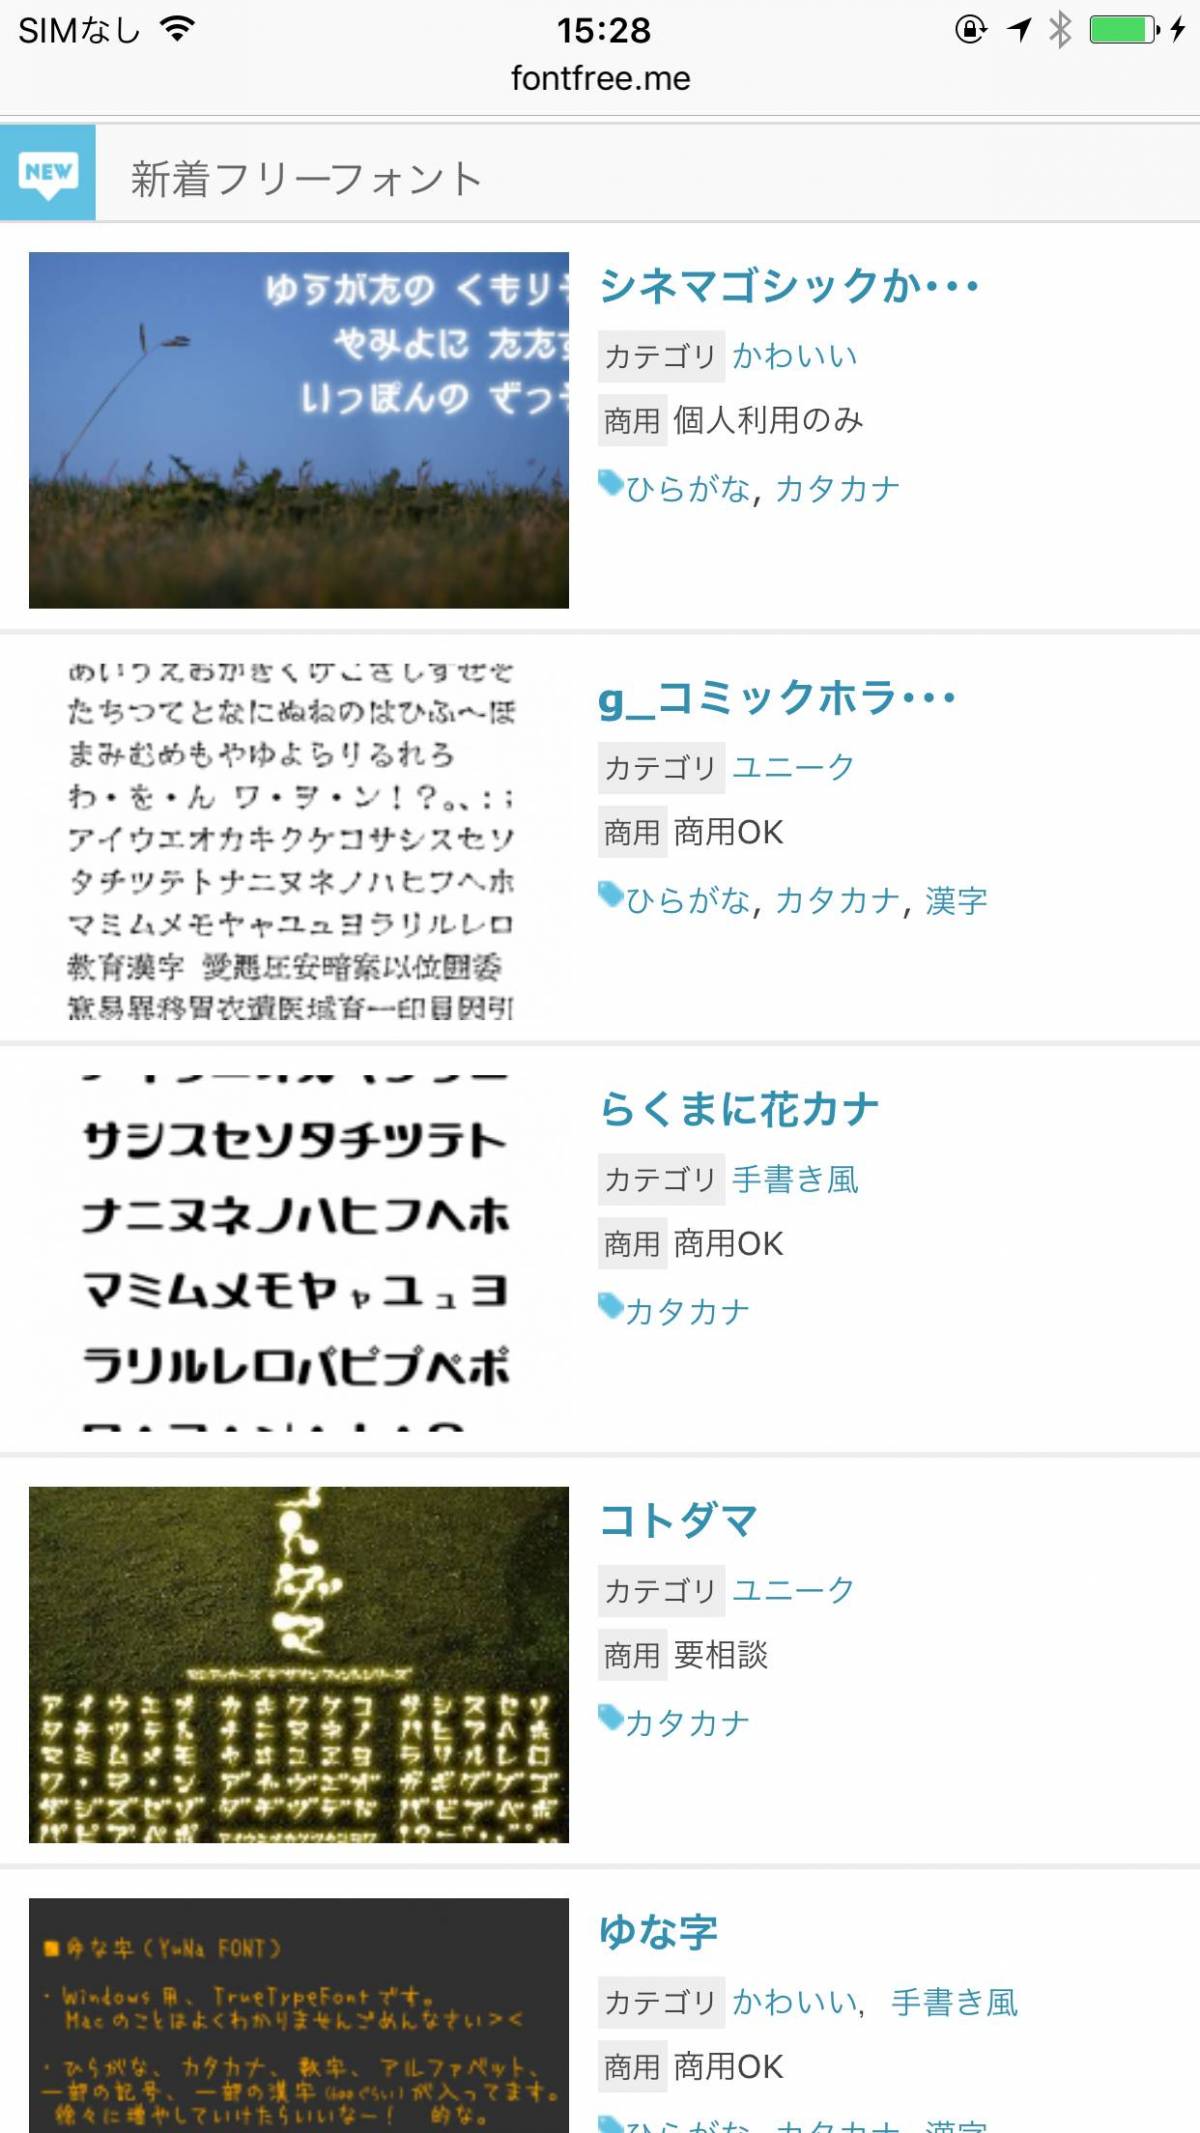 写真に文字入れができるおすすめアプリ9選 可愛い日本語フォントも充実 Appliv Topics